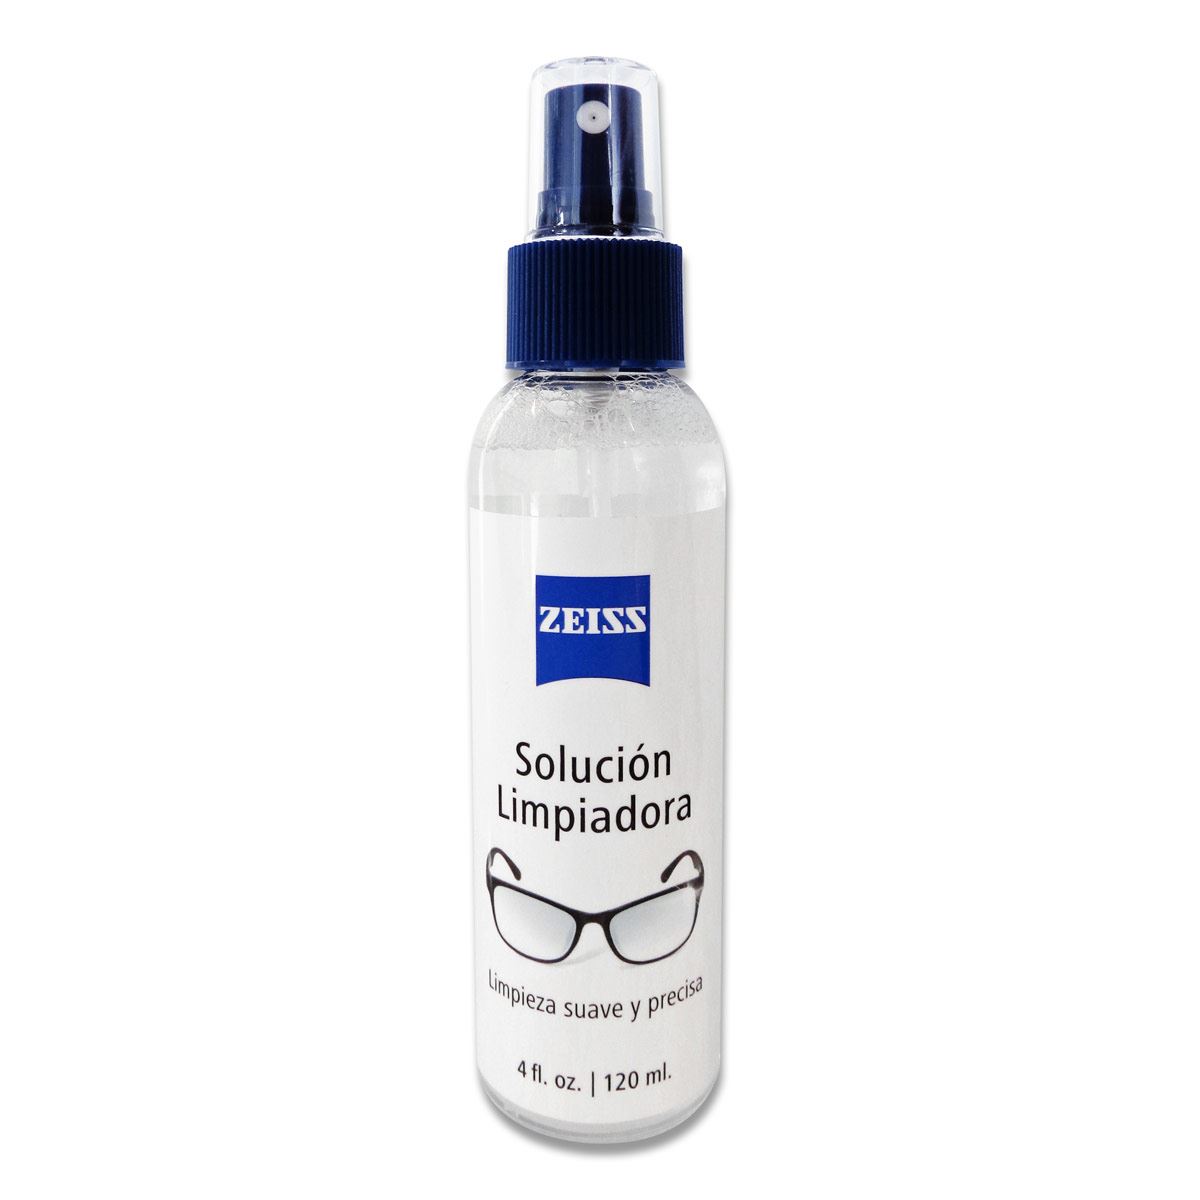 Spray limpiador de lentes- Limpieza suave y profunda de tus lentes